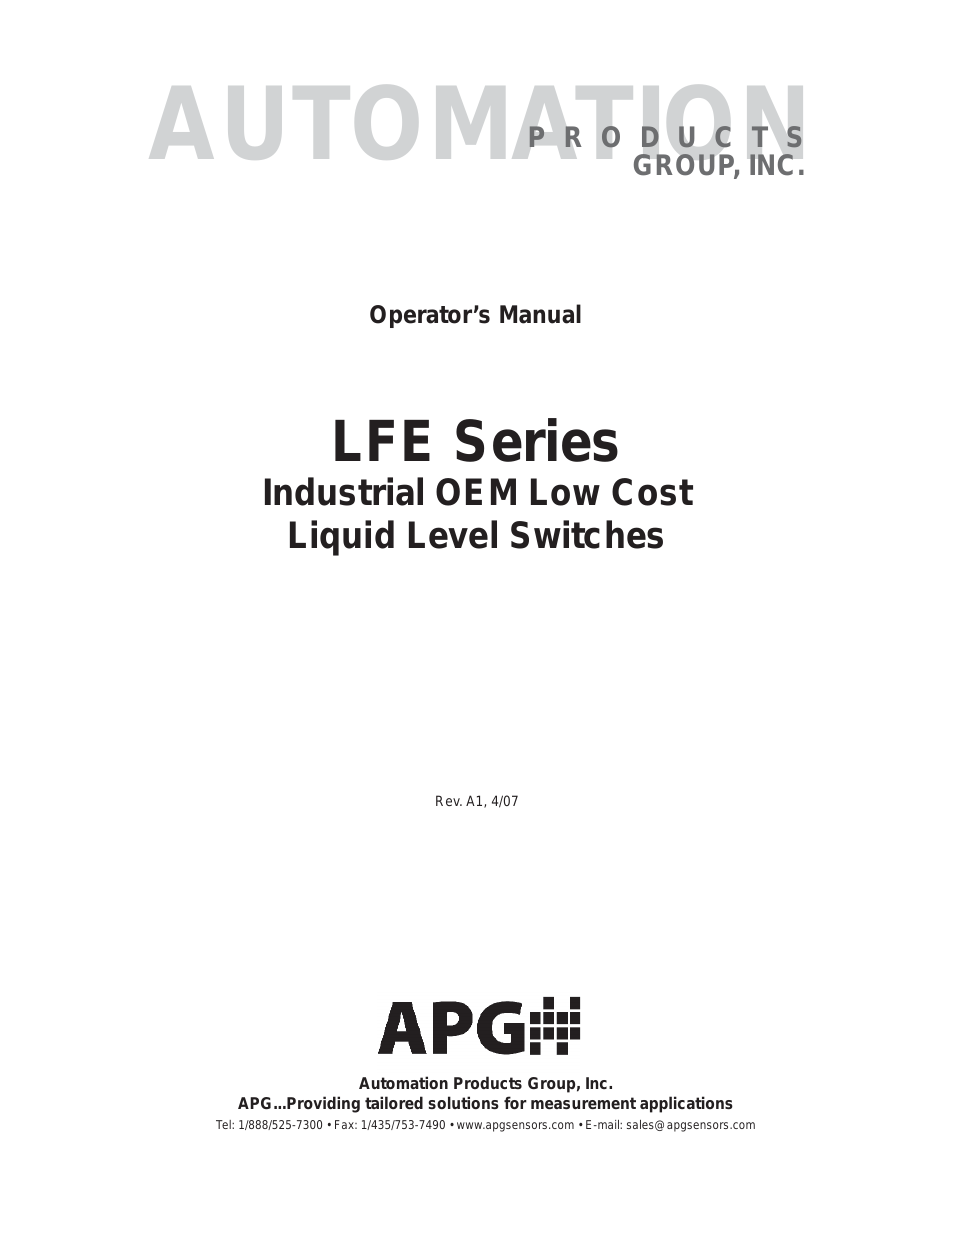 LFE Series user manual